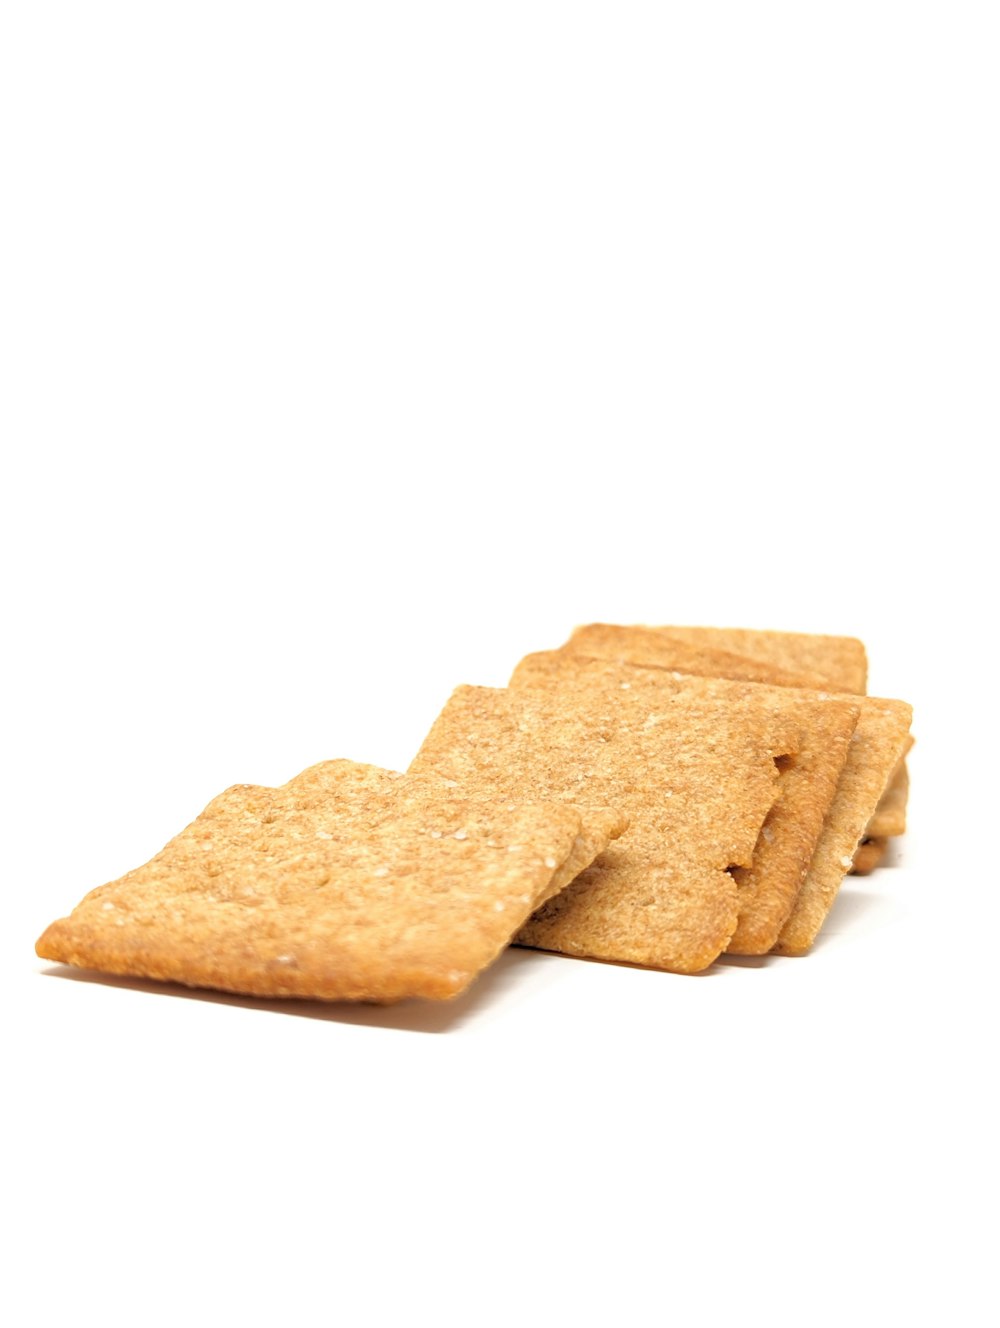 Ein Stapel Cracker sitzt übereinander